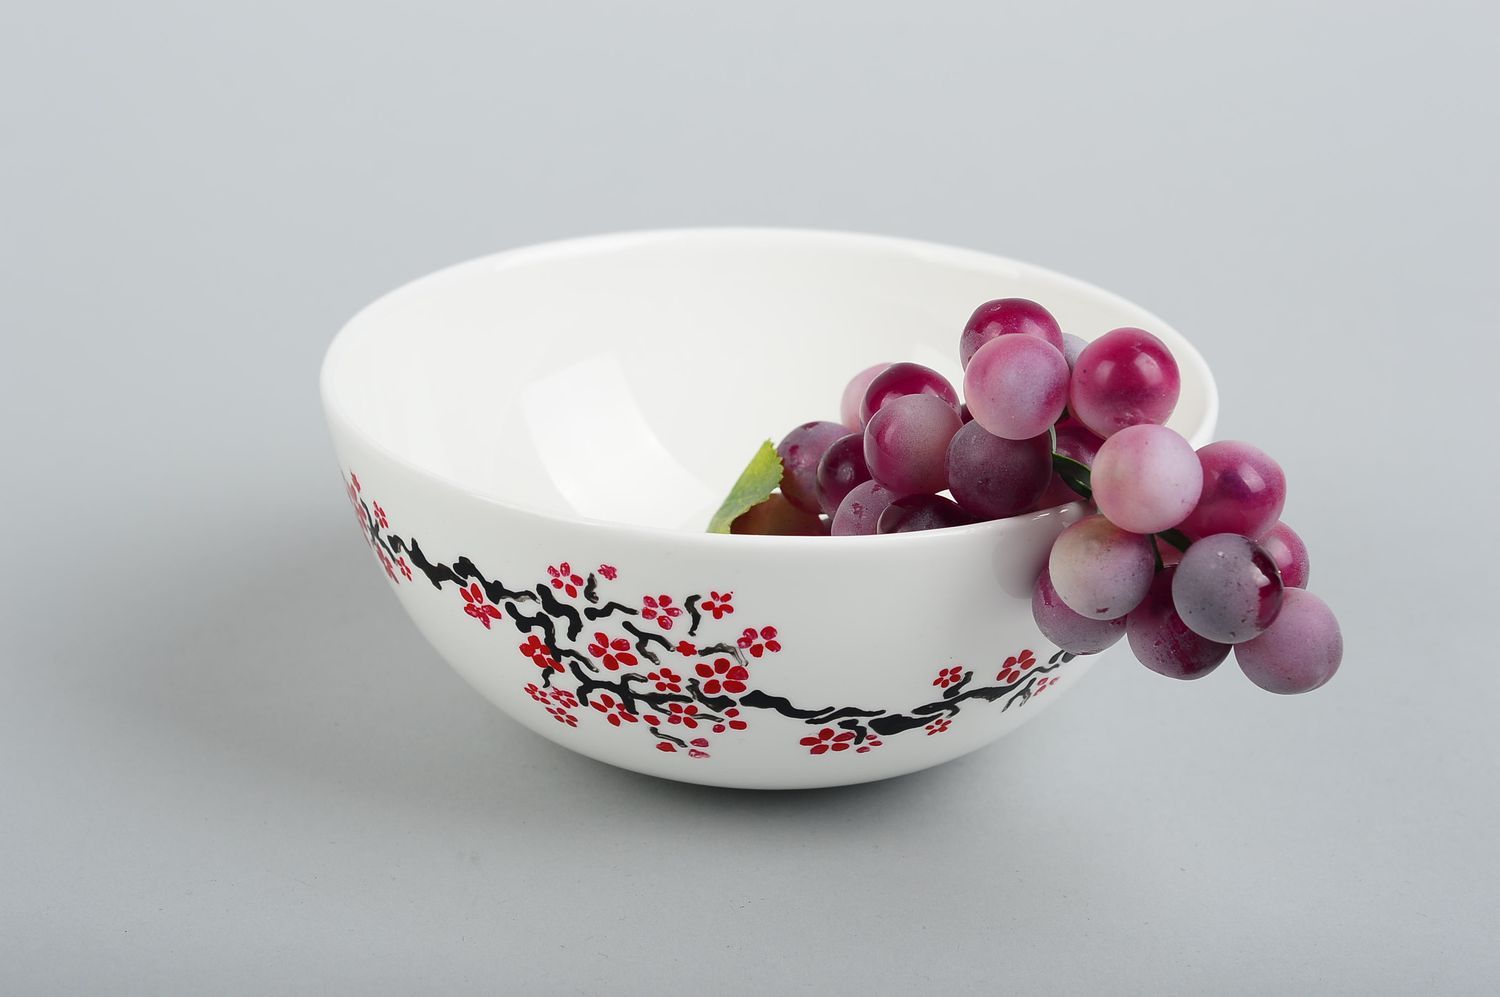 Глубокая керамическая тарелка ручной работы глиняная посуда тарелка для салата фото 1